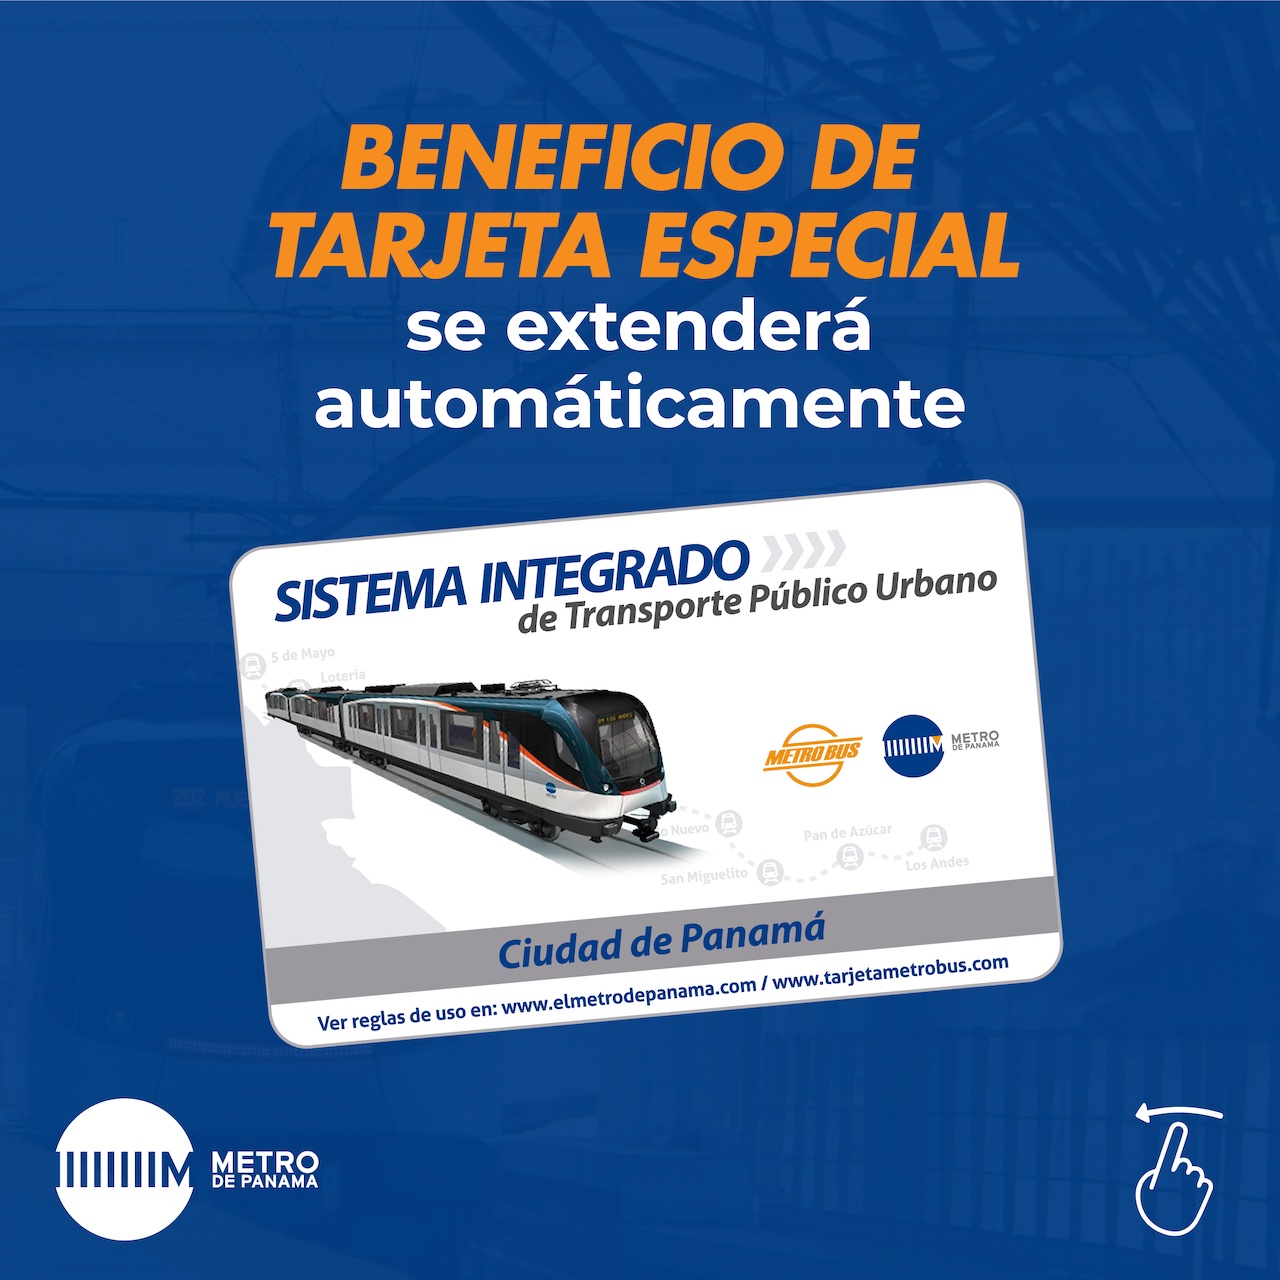 Beneficio de tarjeta especial del Metro se extenderá